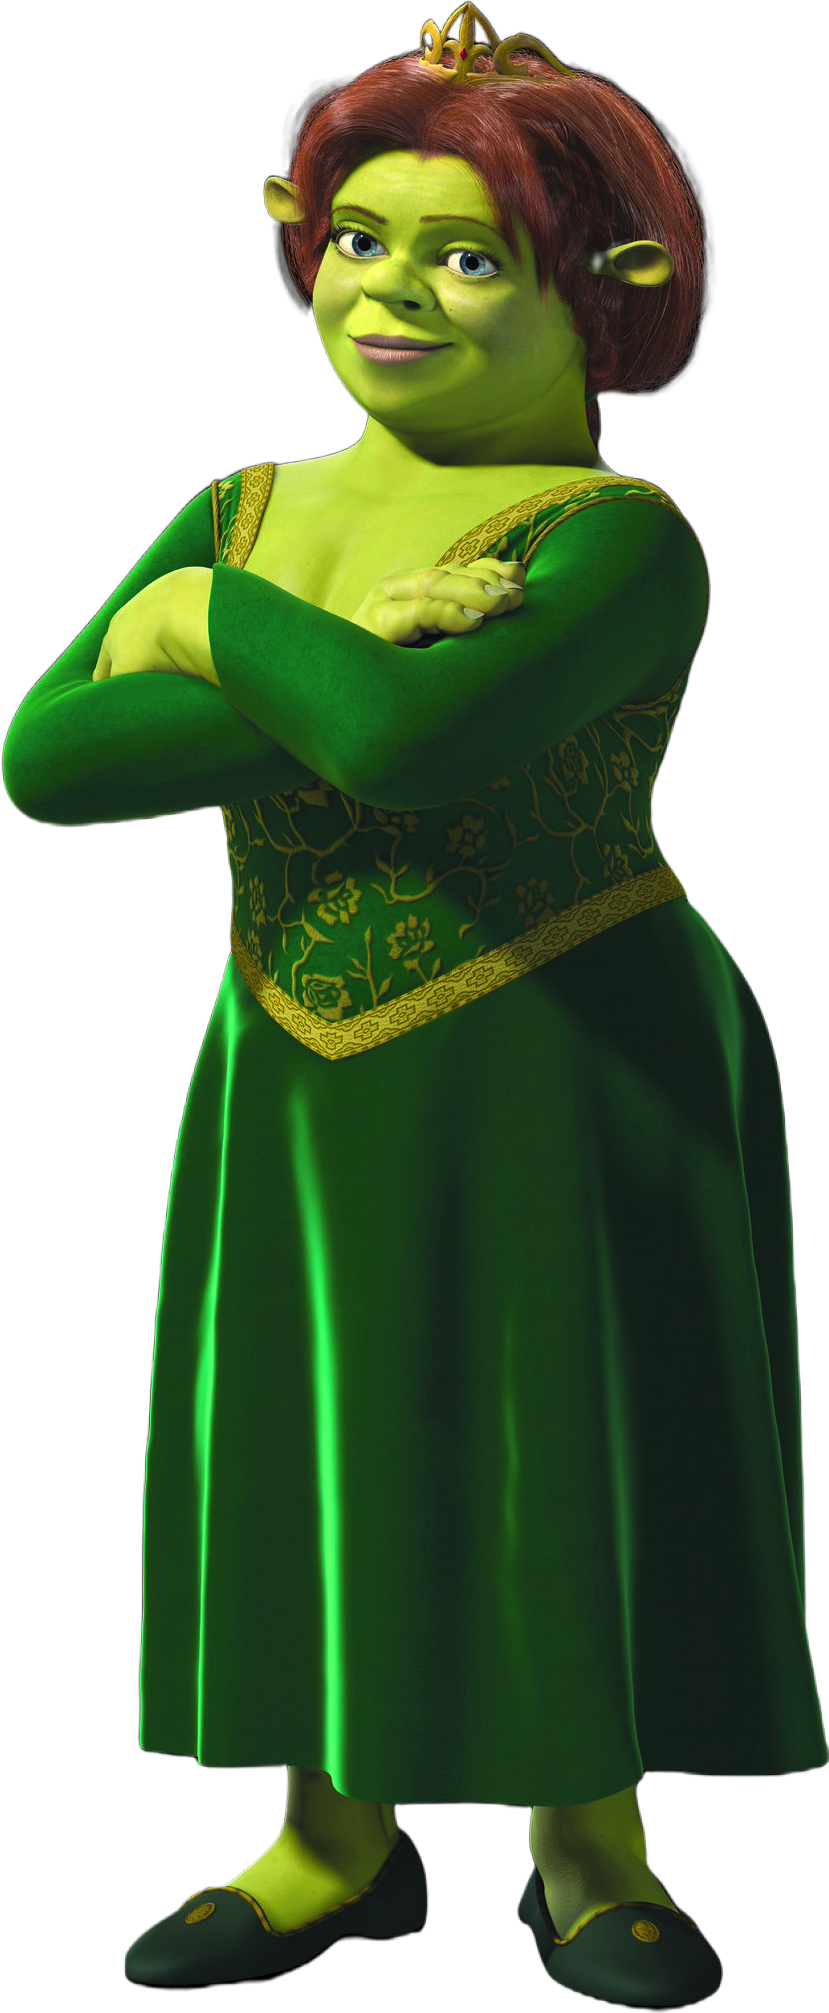 Shrek PNG - Free Download  Shrek, Shrek character, Princess fiona